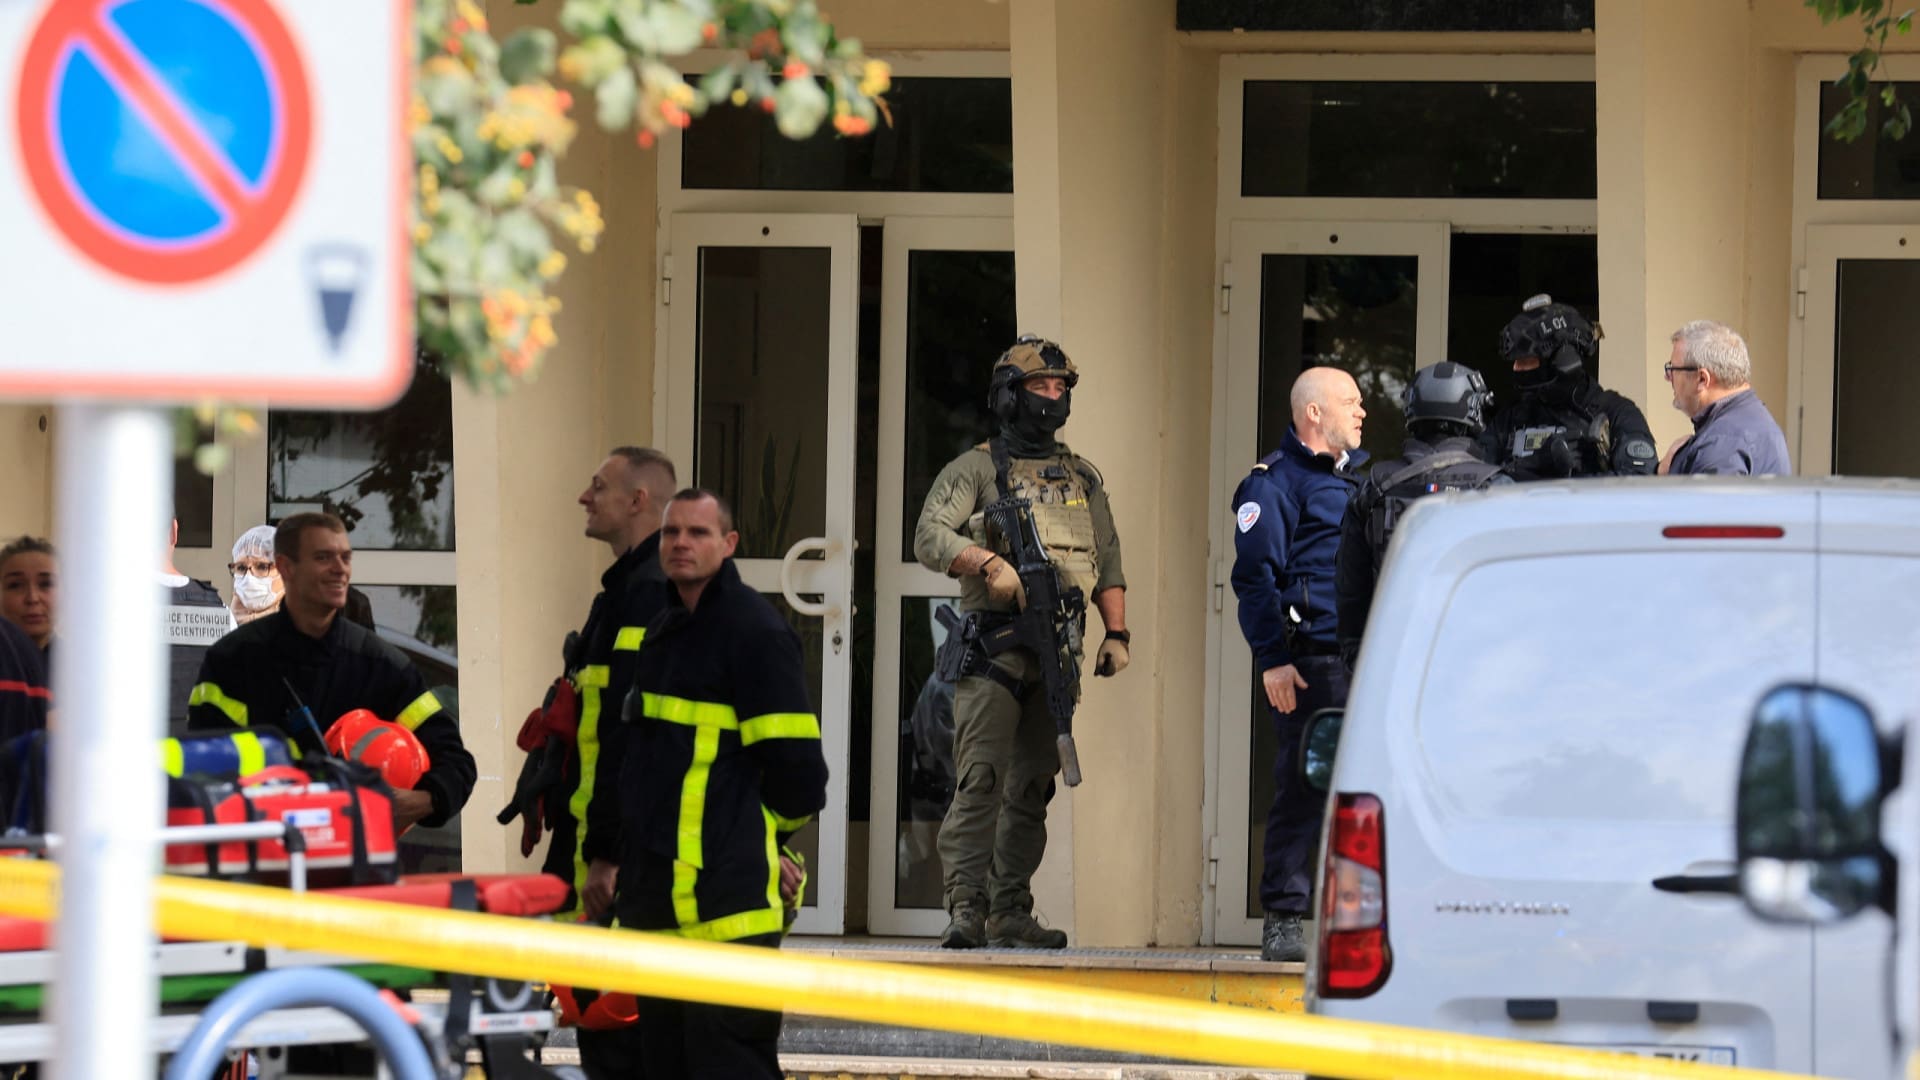 Dois detidos após ataque à faca em escola no norte de França